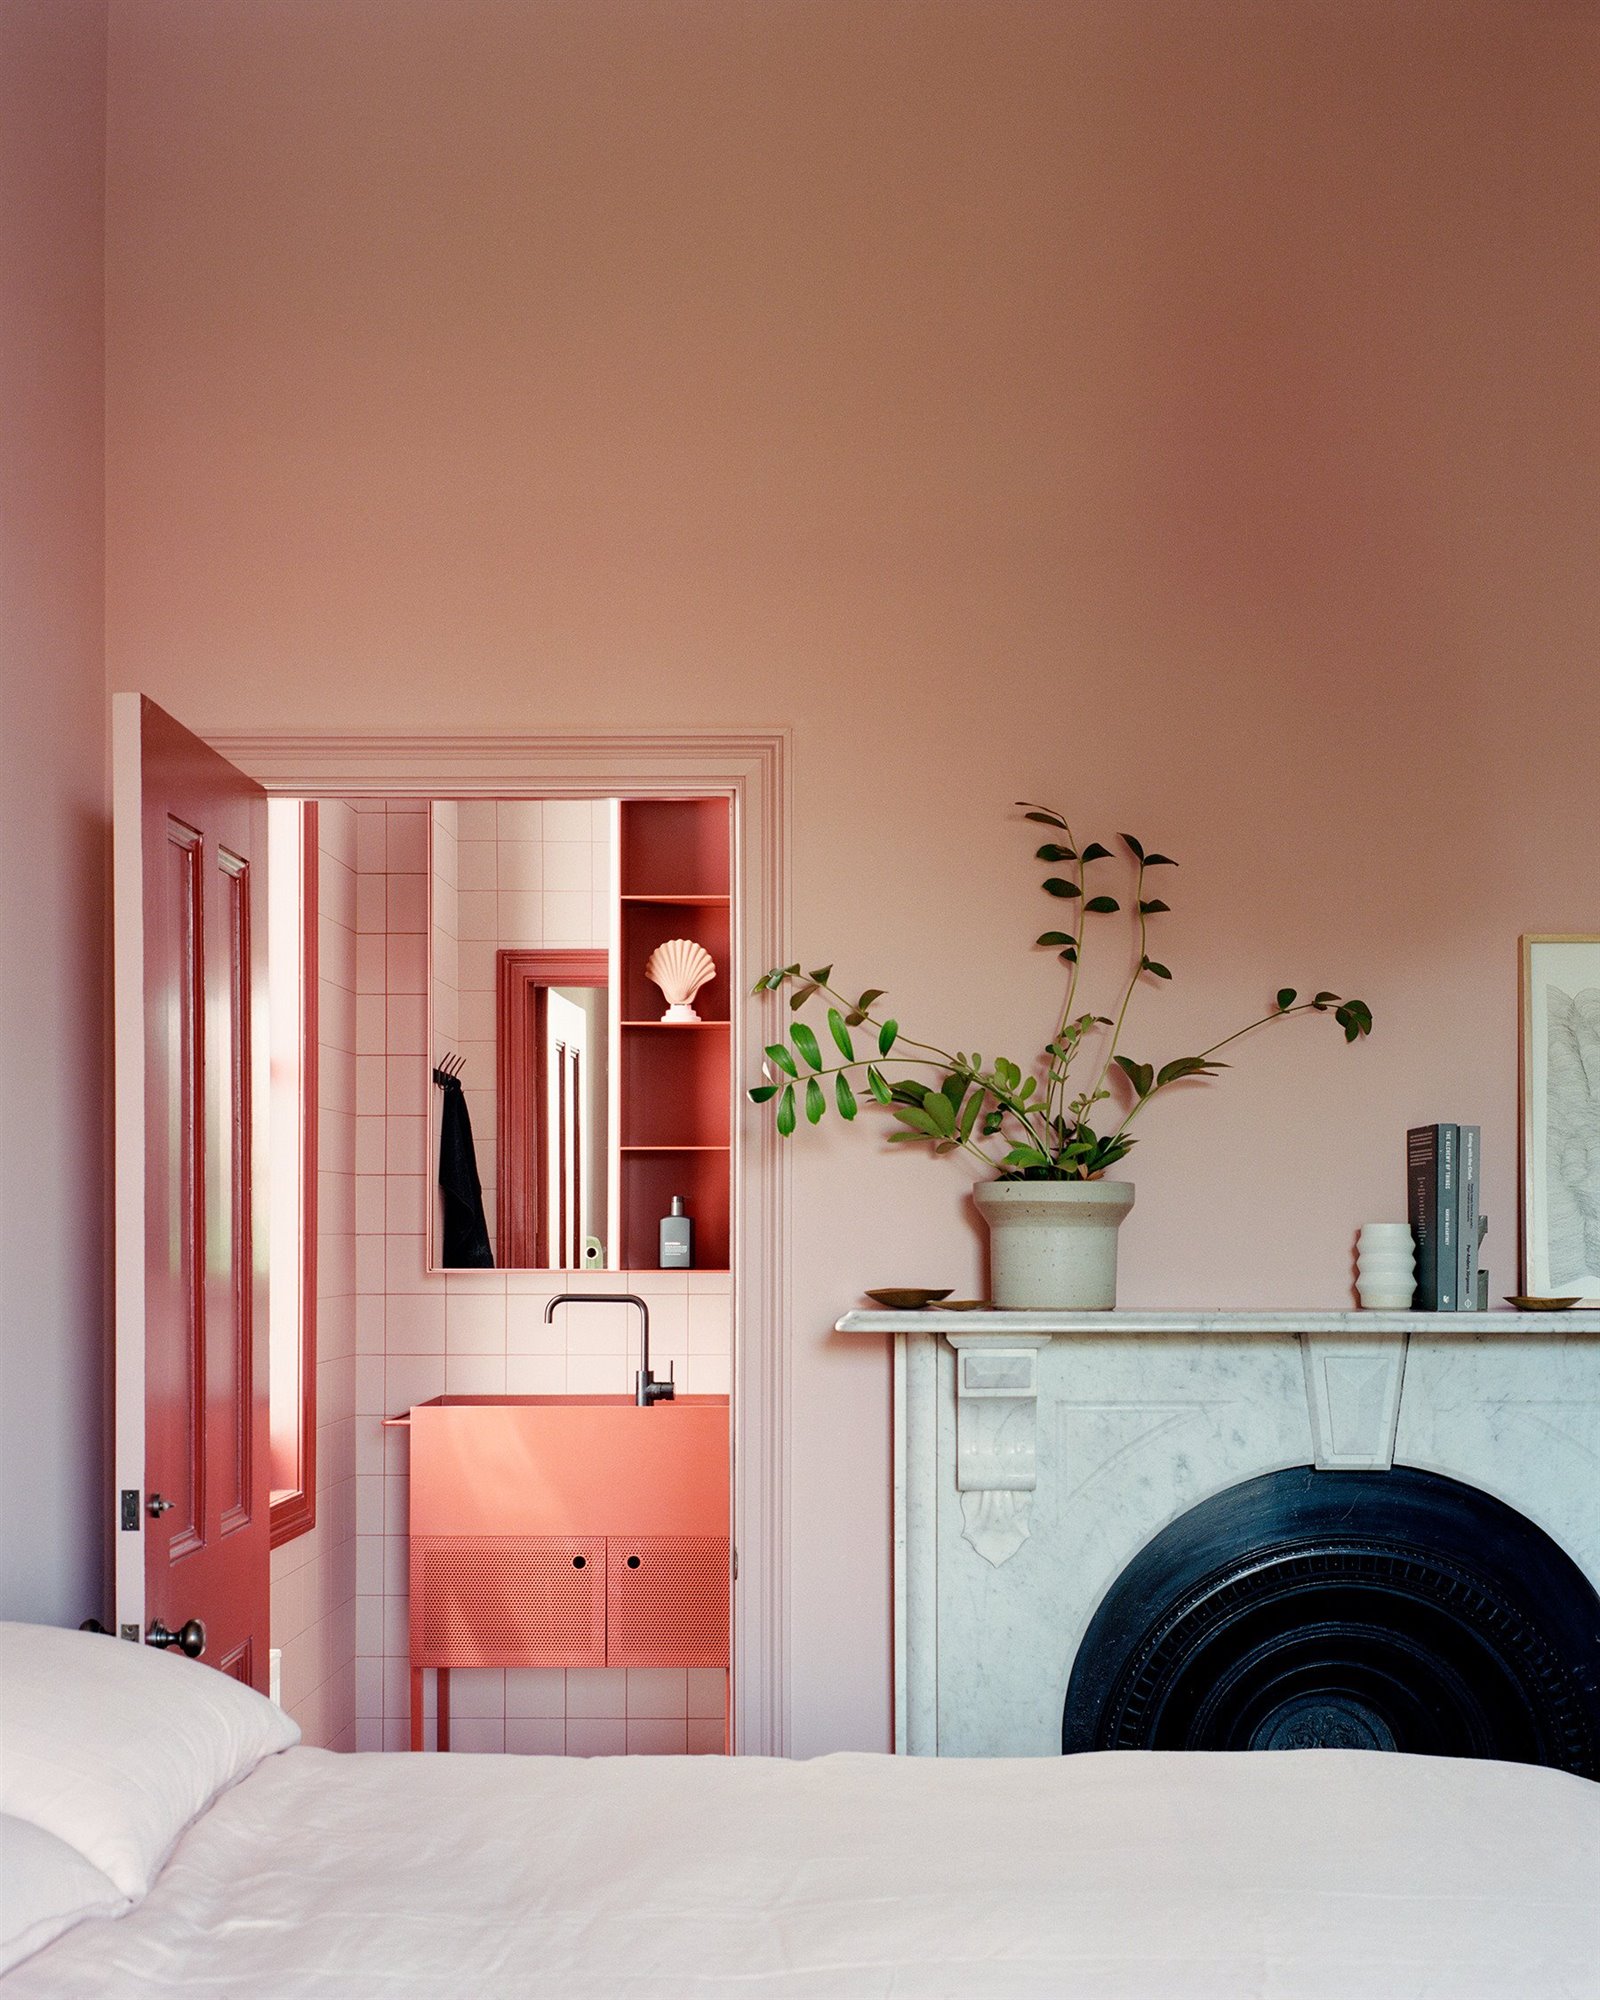 Dormitorio con chimenea en color rojo y rosa. Temperatura de color